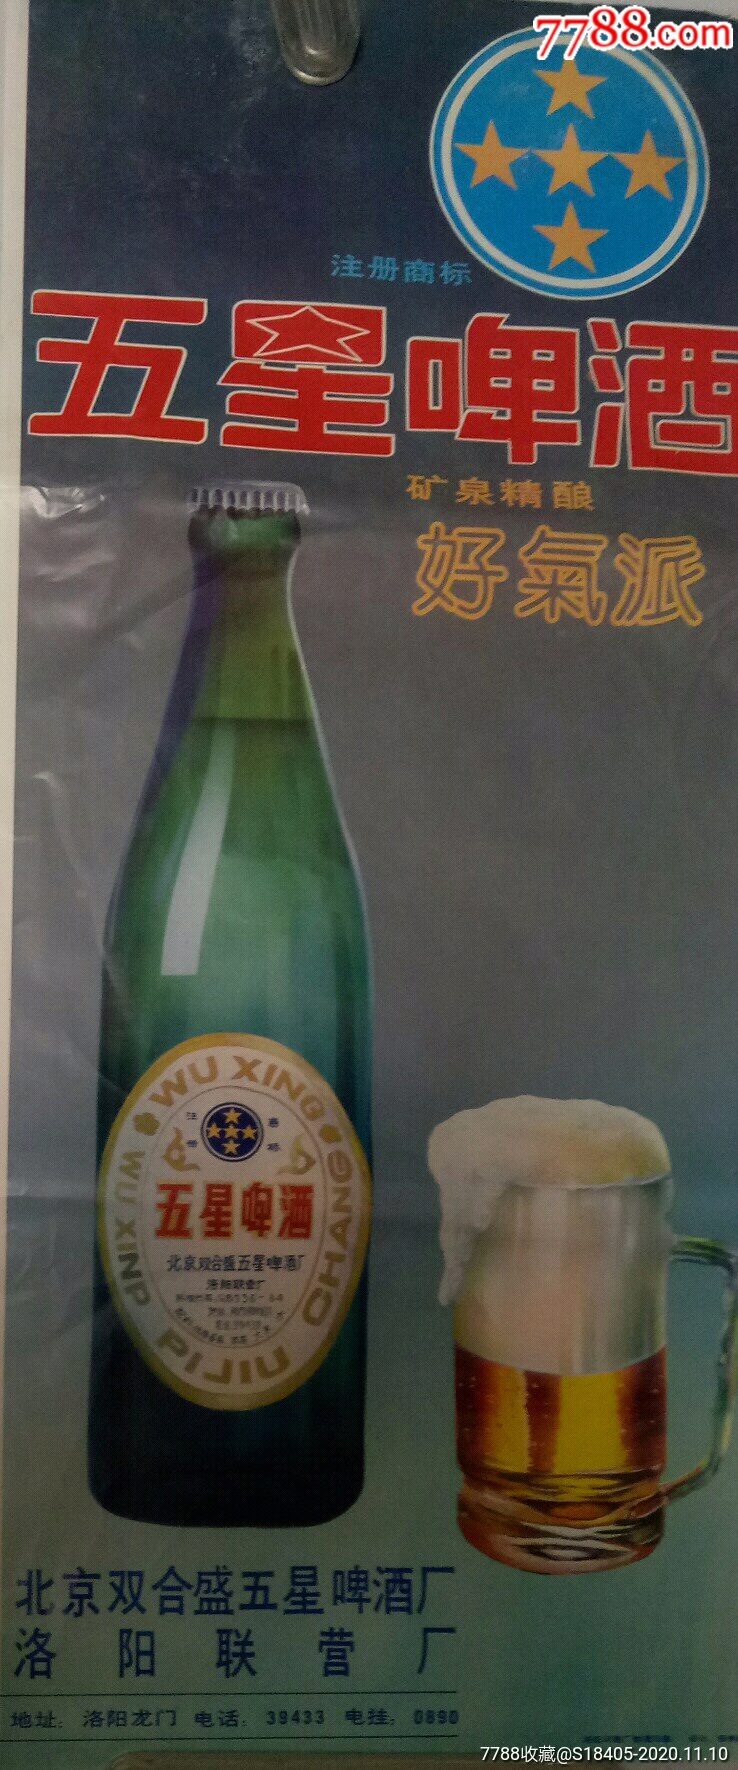 早期五星啤酒广告宣传画(北京双合盛五星啤酒厂洛阳联营厂)电话是5